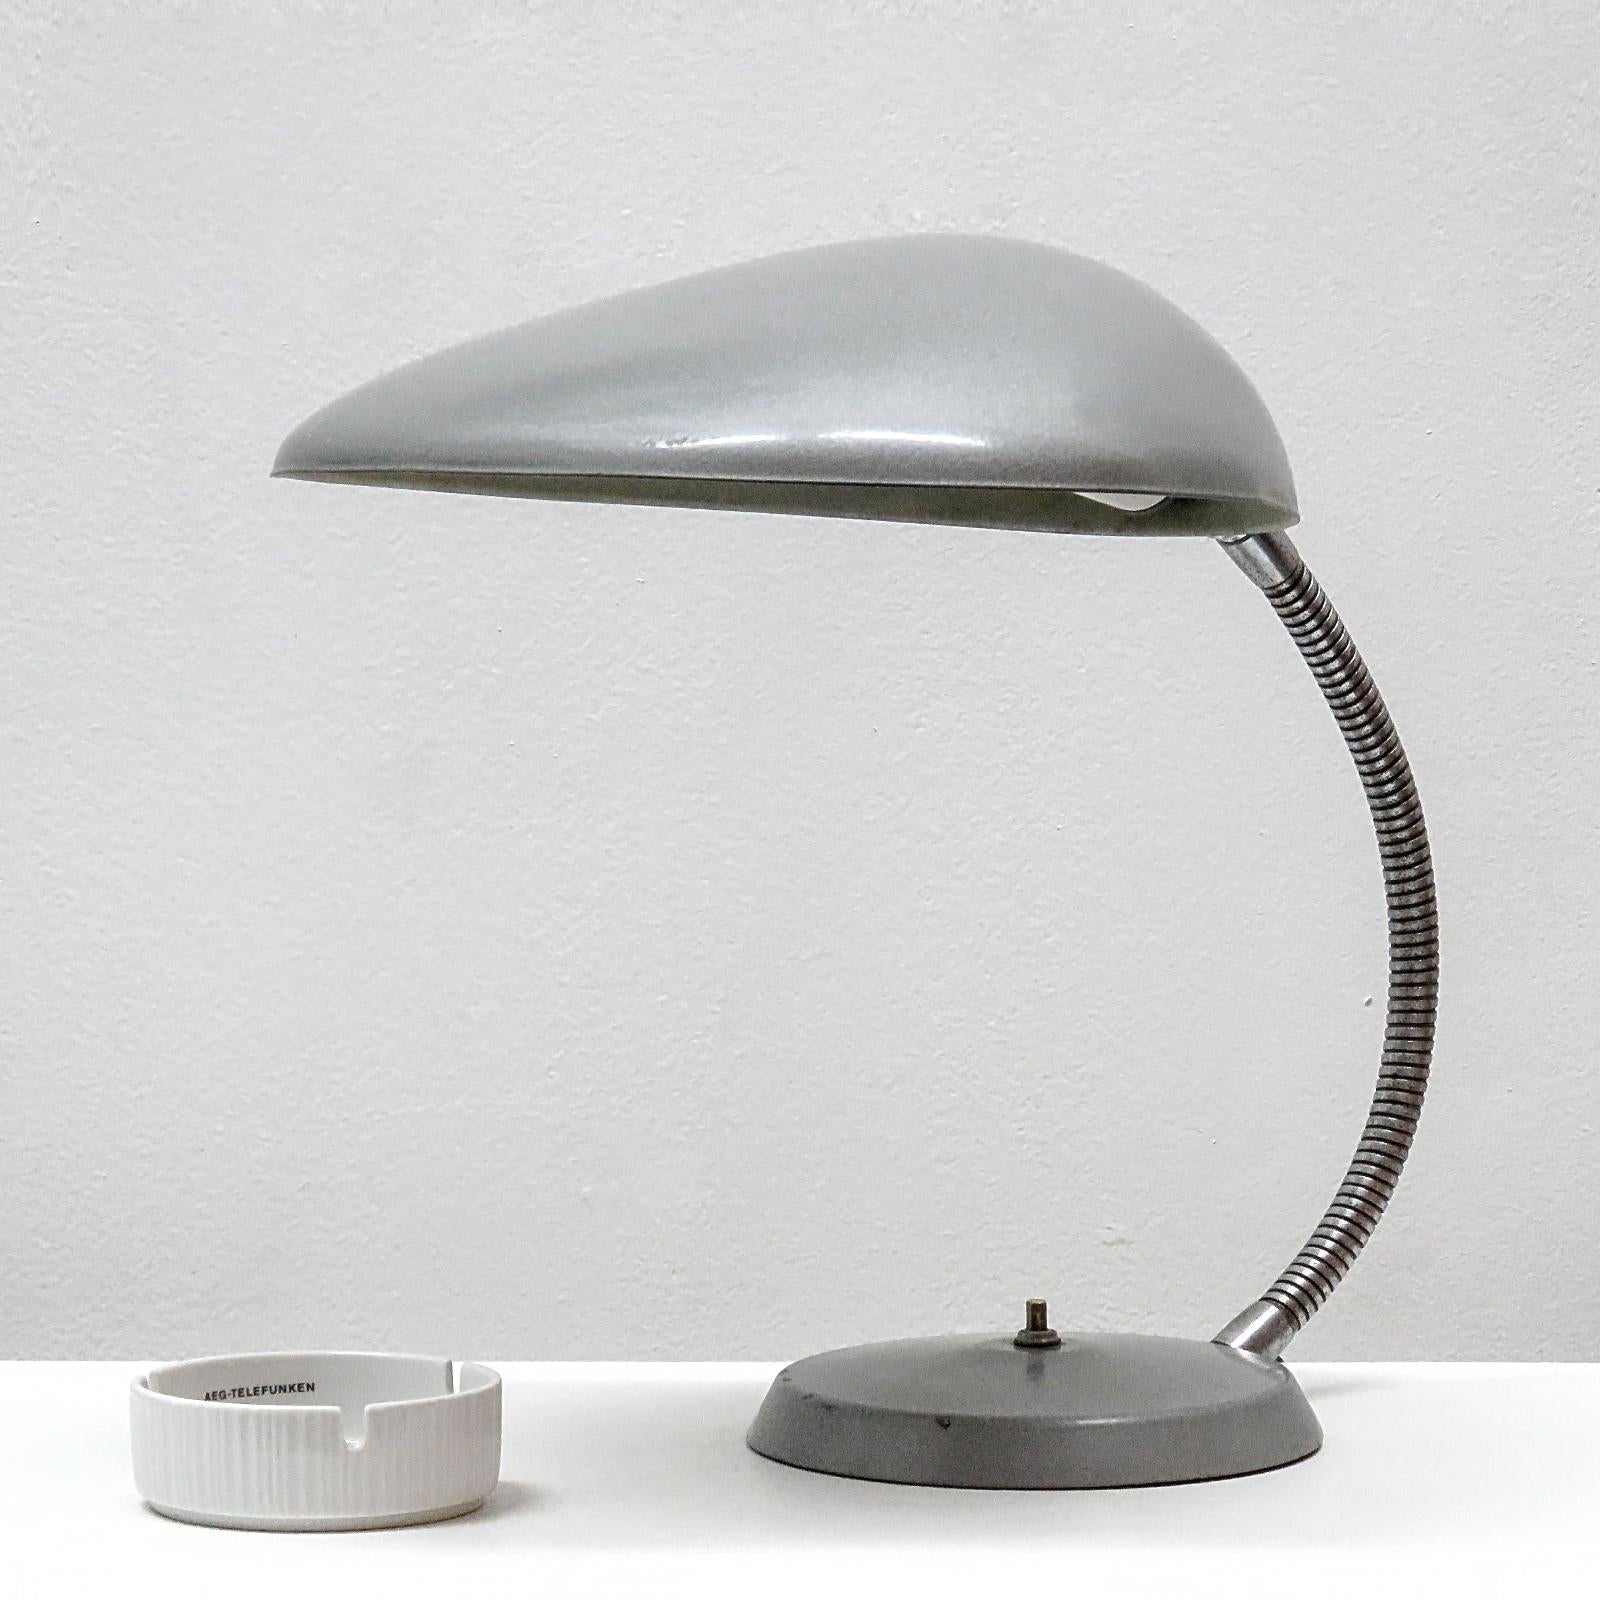 Ikonische Kobra-Lampe von Greta M. Grossman für Ralph O. Smith, um 1950, aus grauem Rotguss. Flexibler Arm, Ein/Aus-Schalter an der Basis. Eine E26-Fassung, max. 75 W, verdrahtet nach US-Standard, Glühbirne wird als einmalige Gefälligkeit